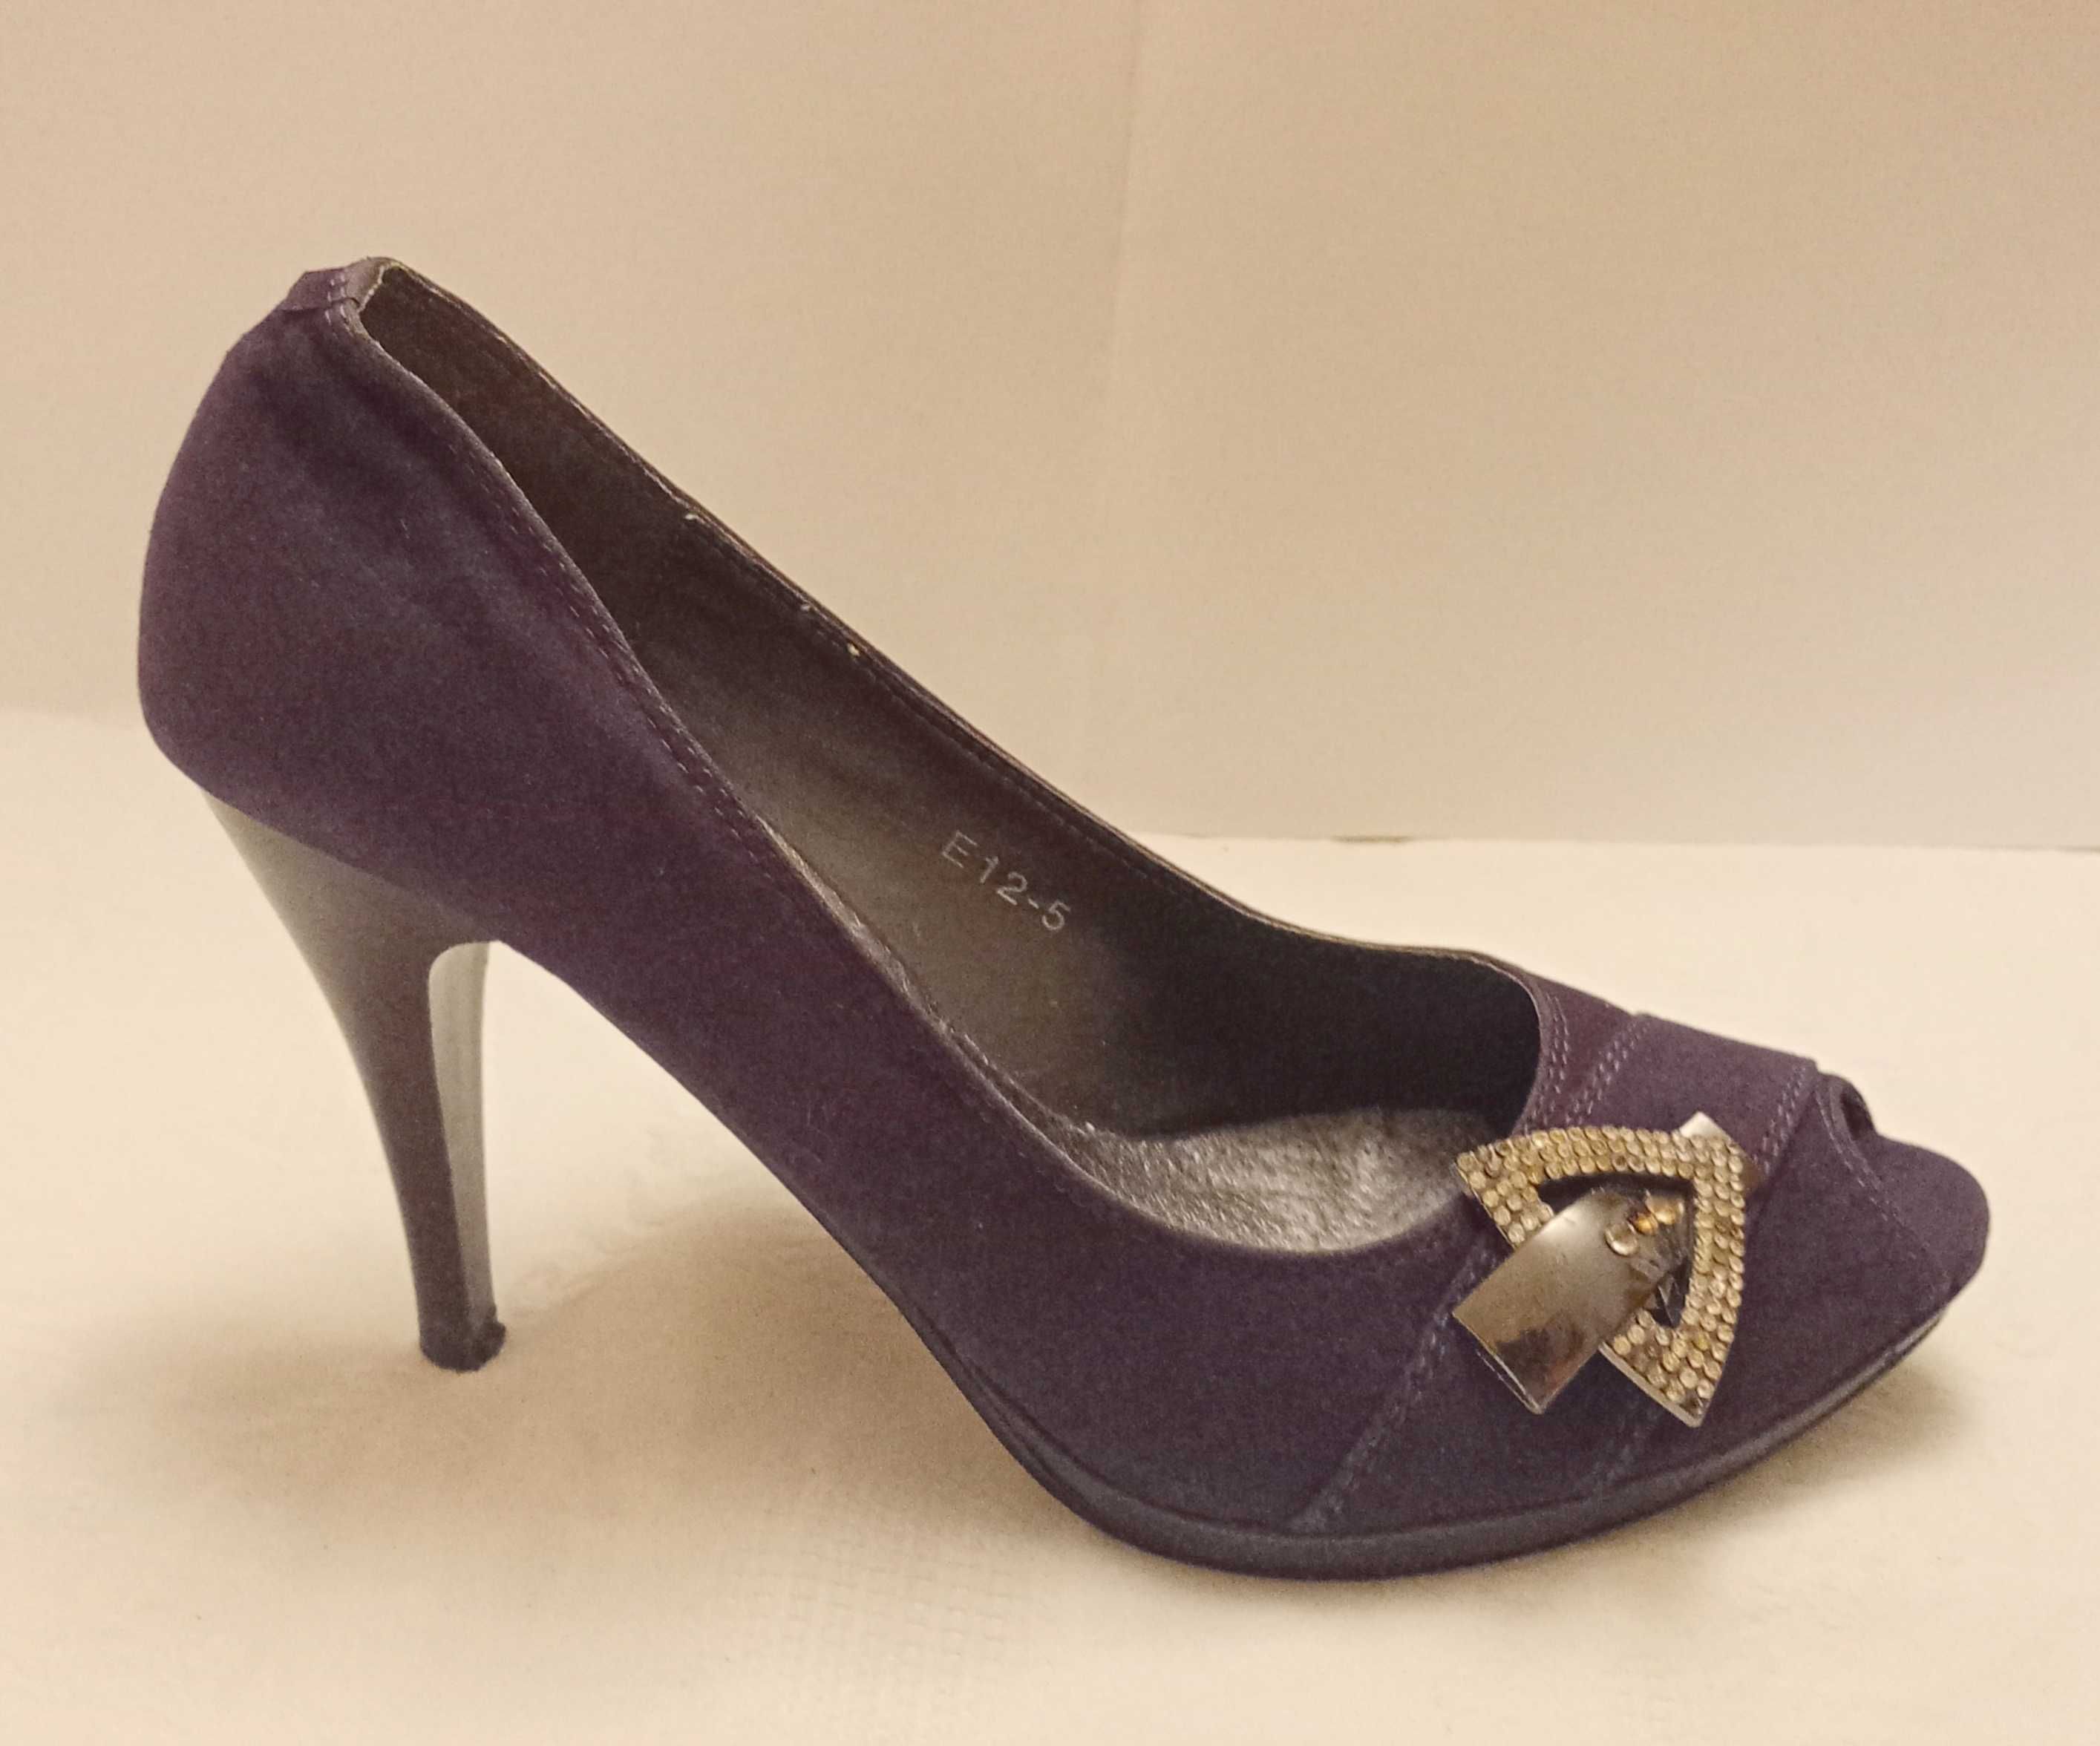 czółenka damskie buty na obcasie szpilka 10 cm,  r. 38 fiolet